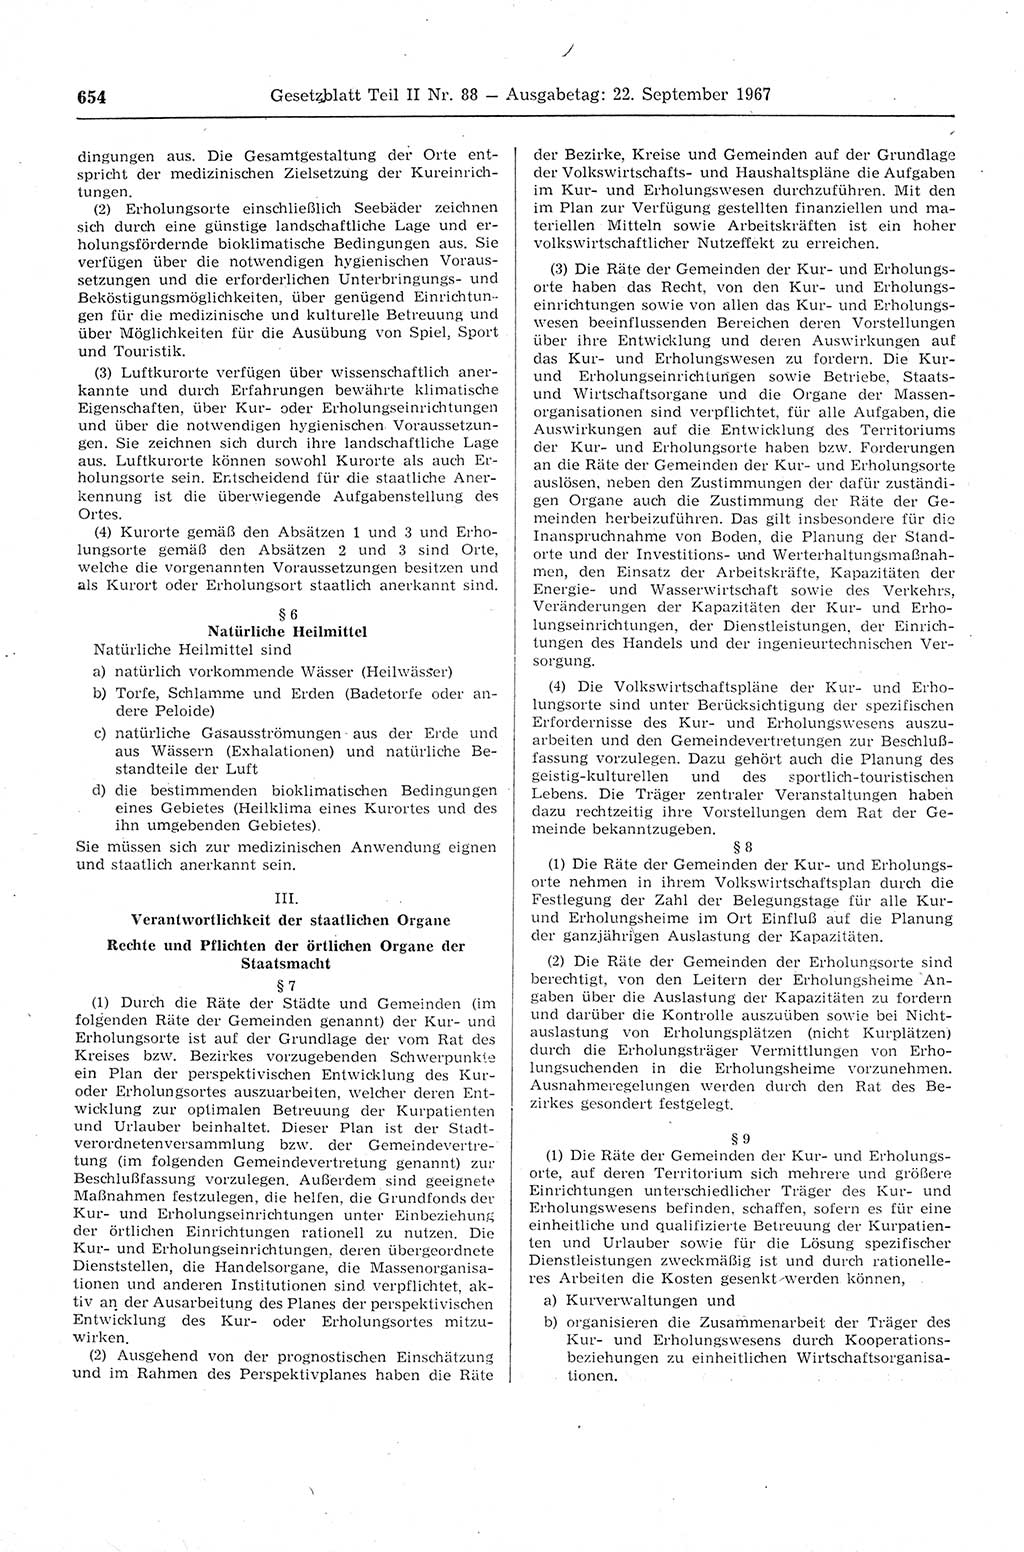 Gesetzblatt (GBl.) der Deutschen Demokratischen Republik (DDR) Teil ⅠⅠ 1967, Seite 654 (GBl. DDR ⅠⅠ 1967, S. 654)